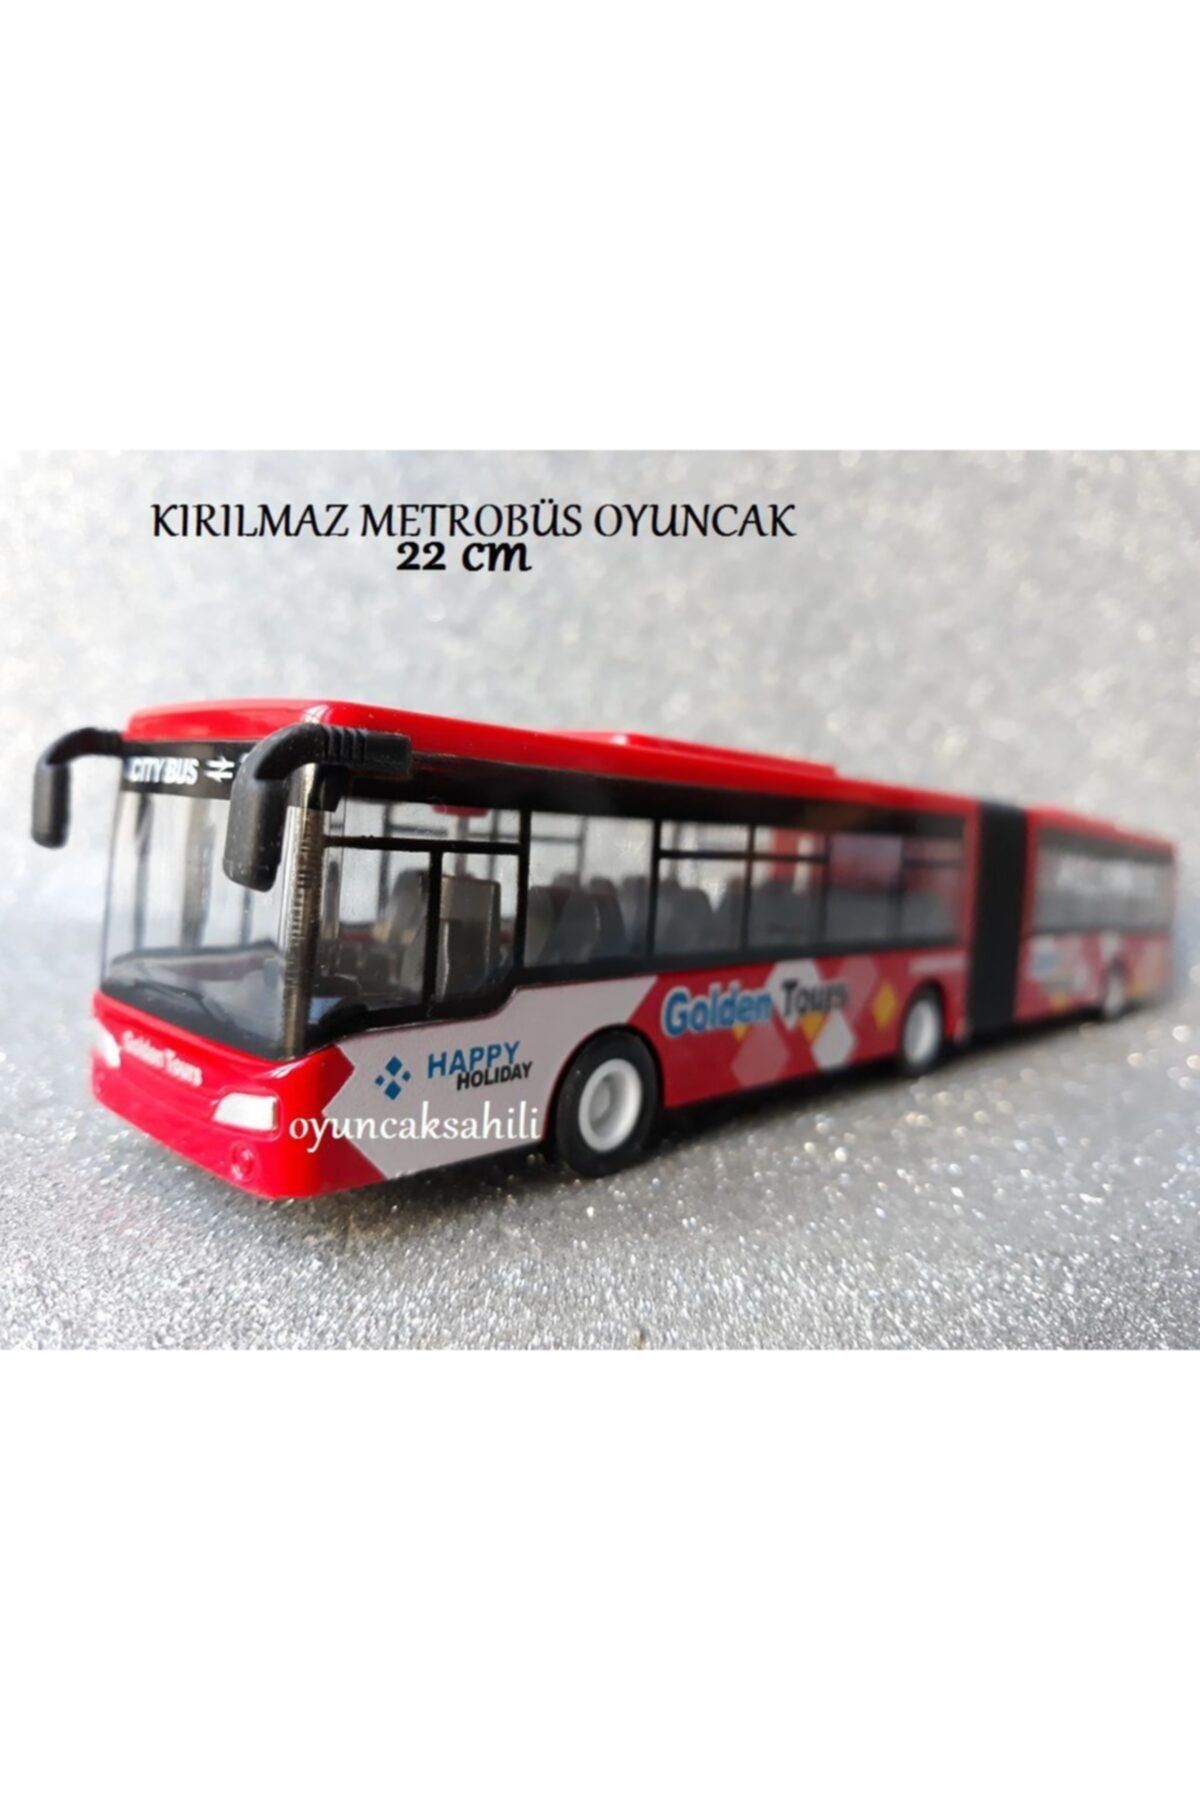 OYUNCAKSAHİLİ Otobüs Körüklü Oyuncak 22cm Yolcu Otobüsü Kırılmaz Metrobüs Red3